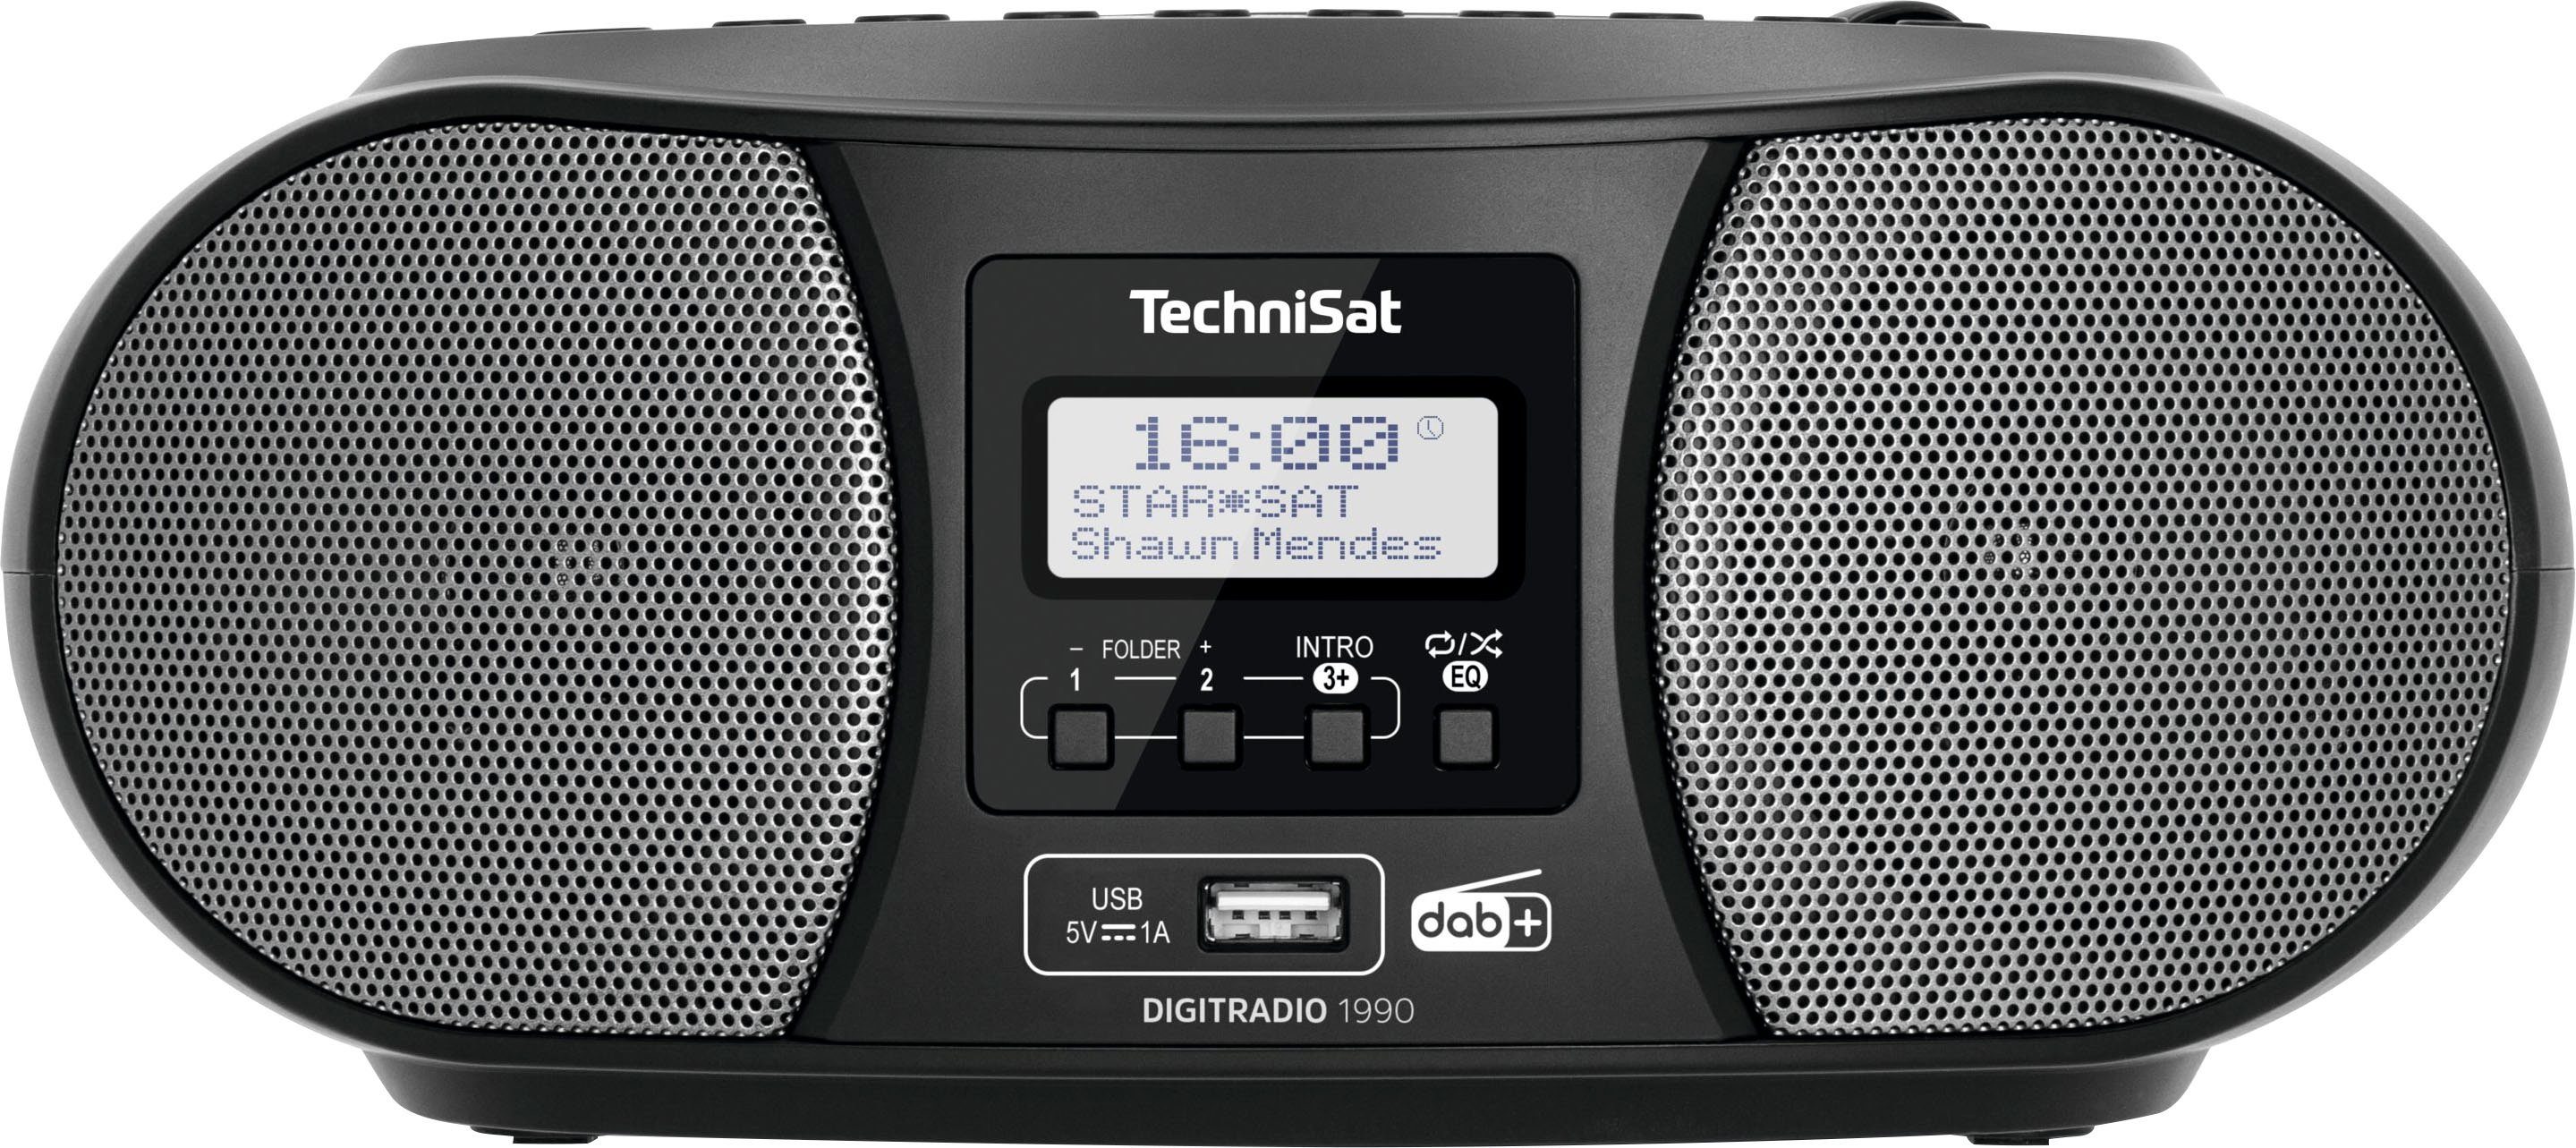 Sonderverkauf bis zu 70 % Rabatt TechniSat Digitradio 1990 mit CD-Player, schwarz DAB+, Bluetooth, USB, UKW, Stereo- möglich) Boombox (DAB), Batteriebetrieb (Digitalradio FM-Tuner